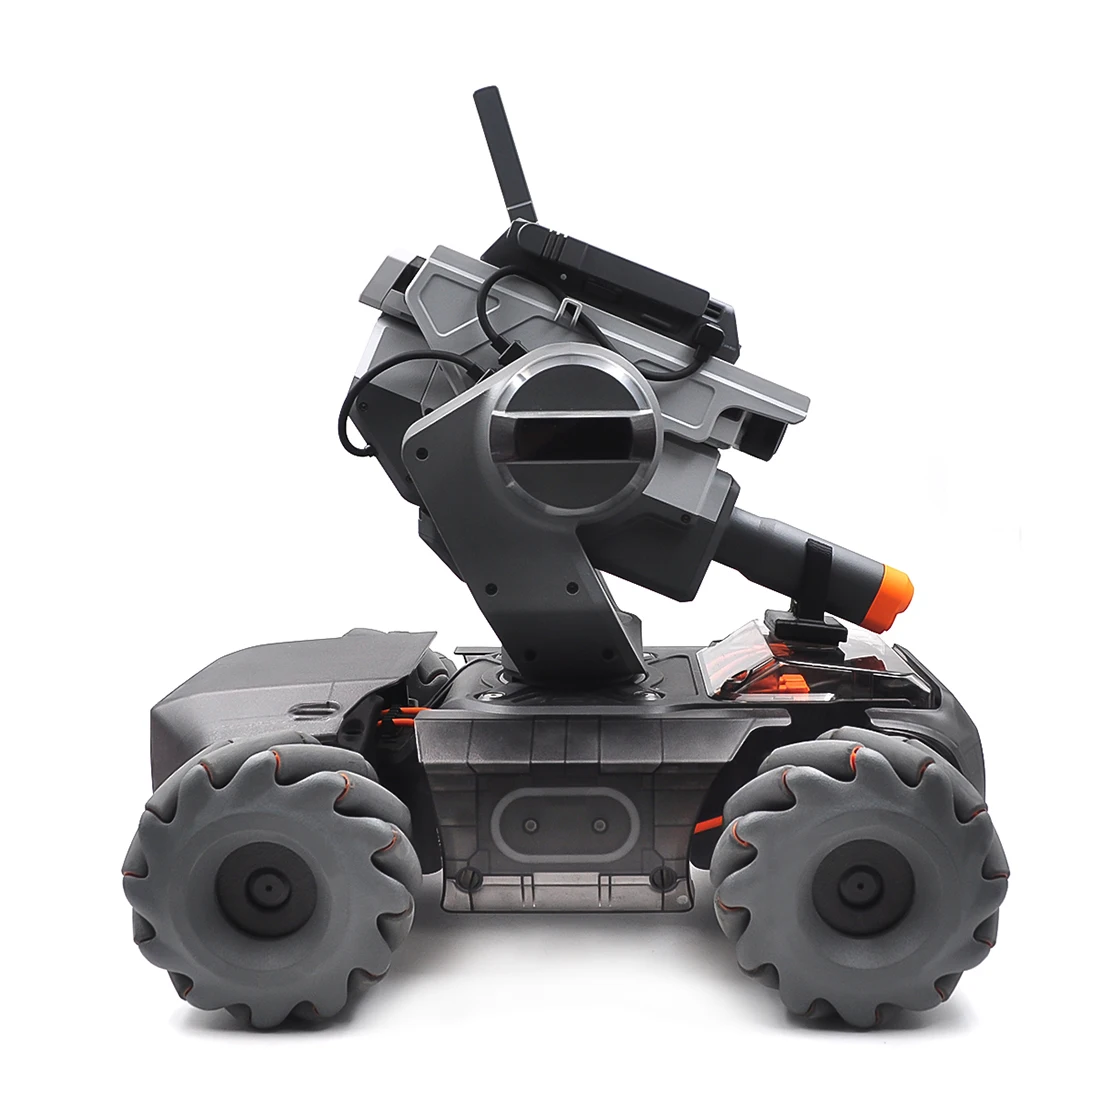 HOBBYINRC для DJI RoboMaster S1 Обучающий робот карданный держатель камеры крепление Дрон аксессуары наборы